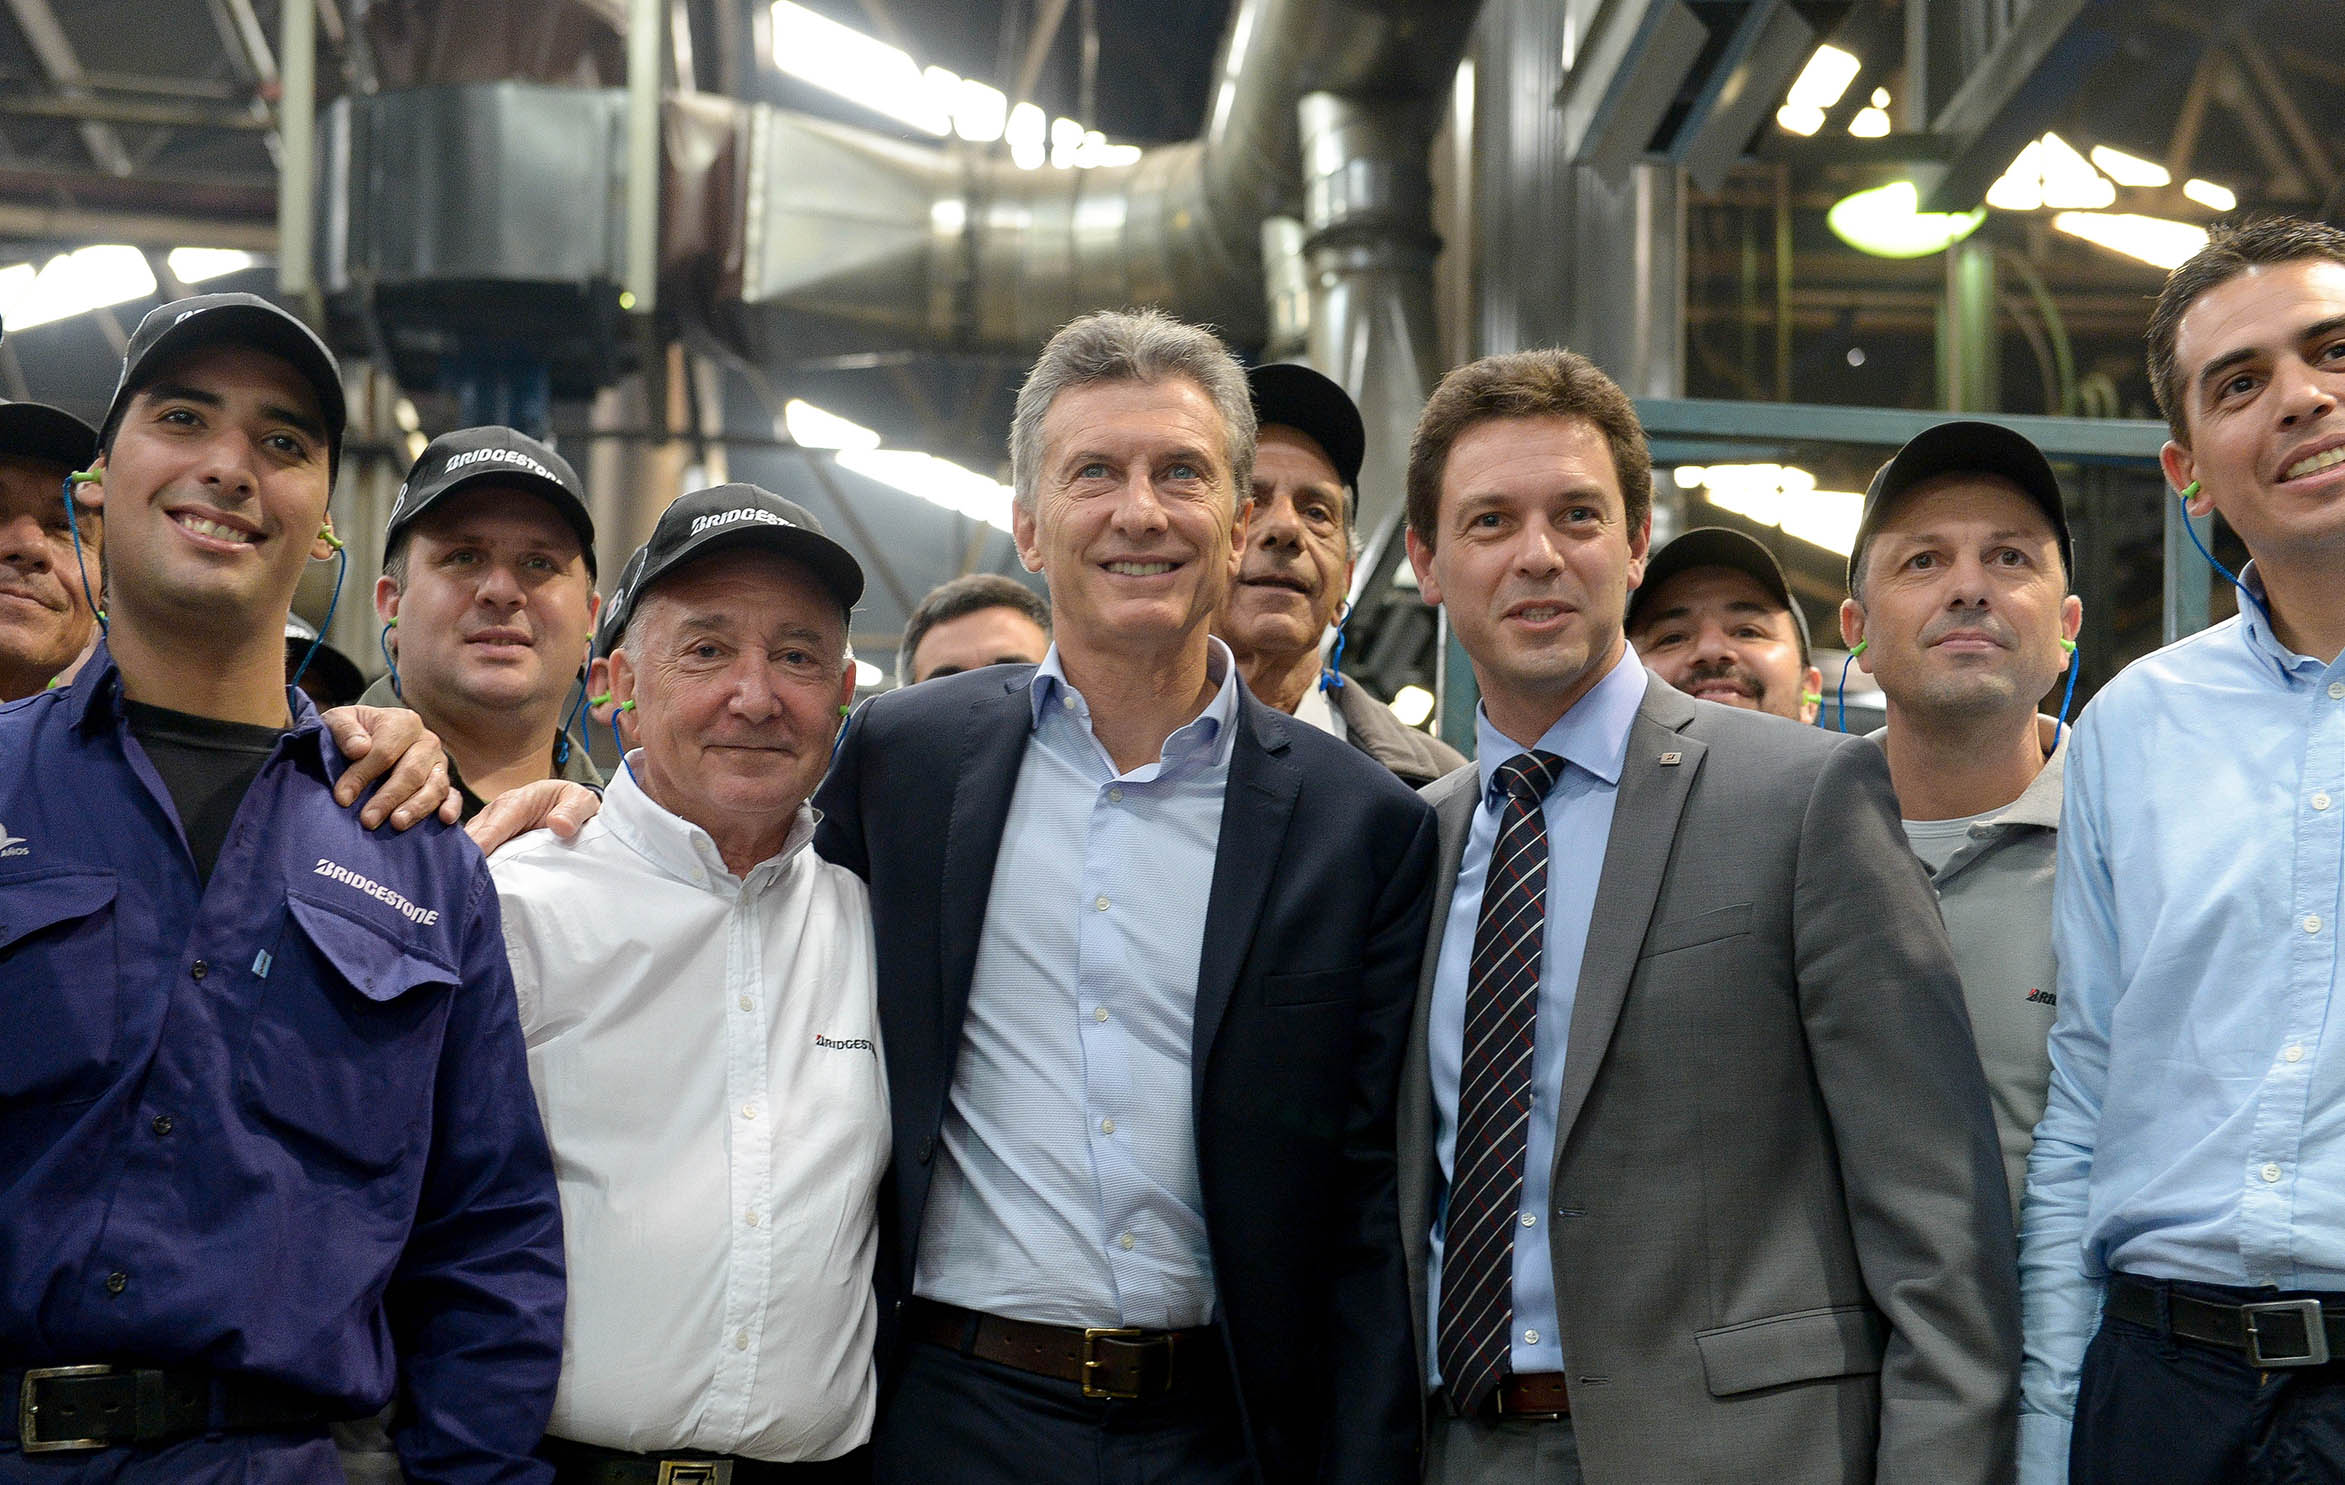 El Presidente visitó una fábrica neumáticos donde se anunciaron inversiones